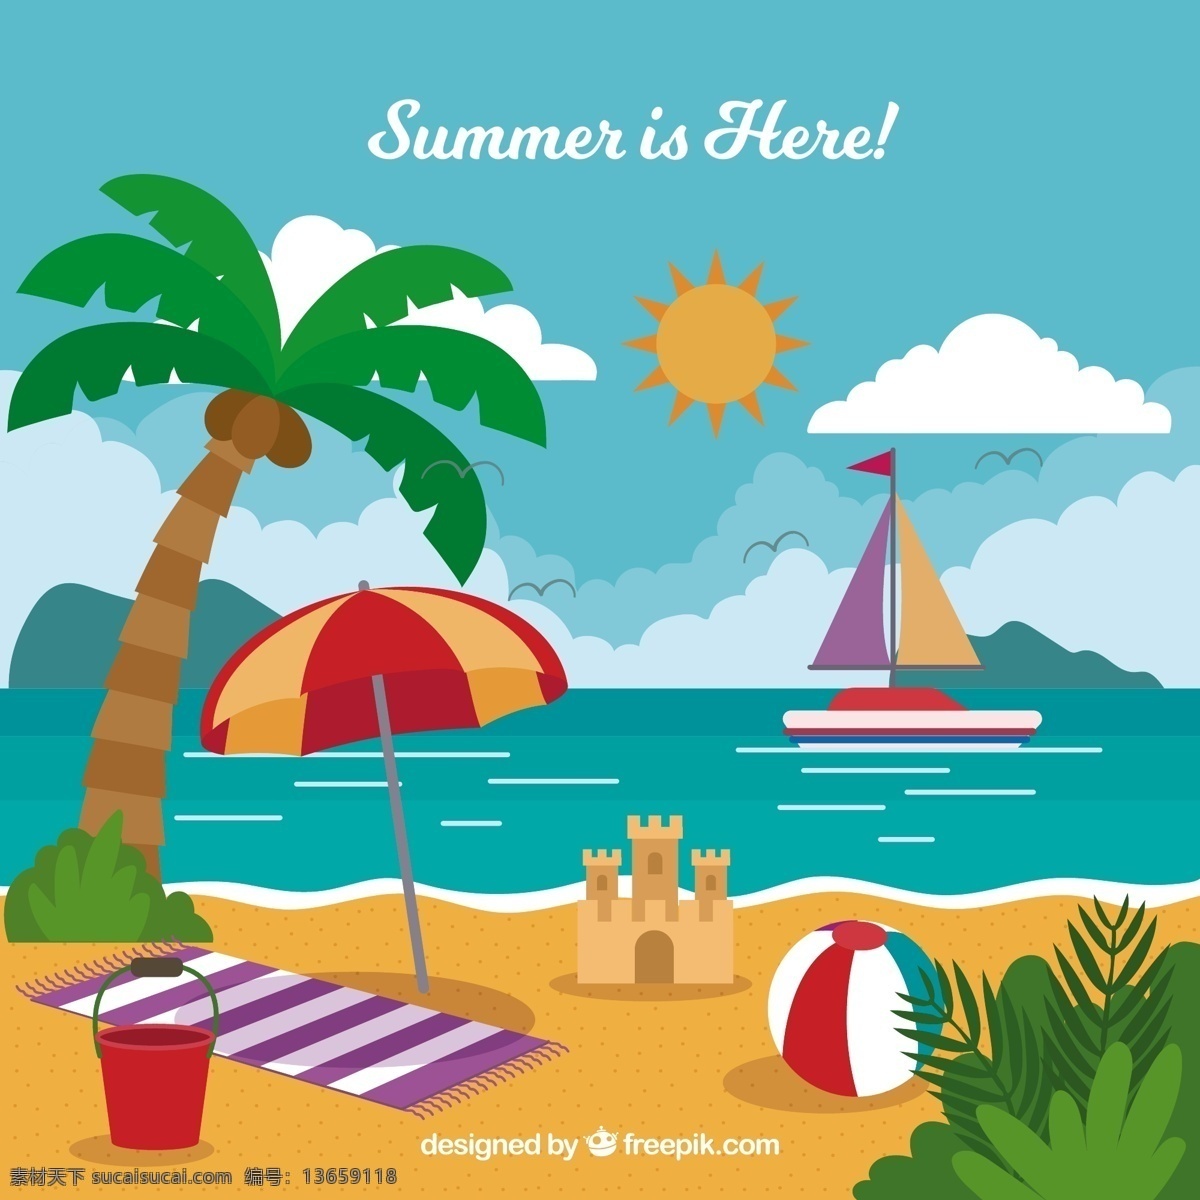 创意 夏季 度假 沙滩 风景 椰子树 太阳 帆船 云朵 城堡 背景边框 动漫动画 风景漫画